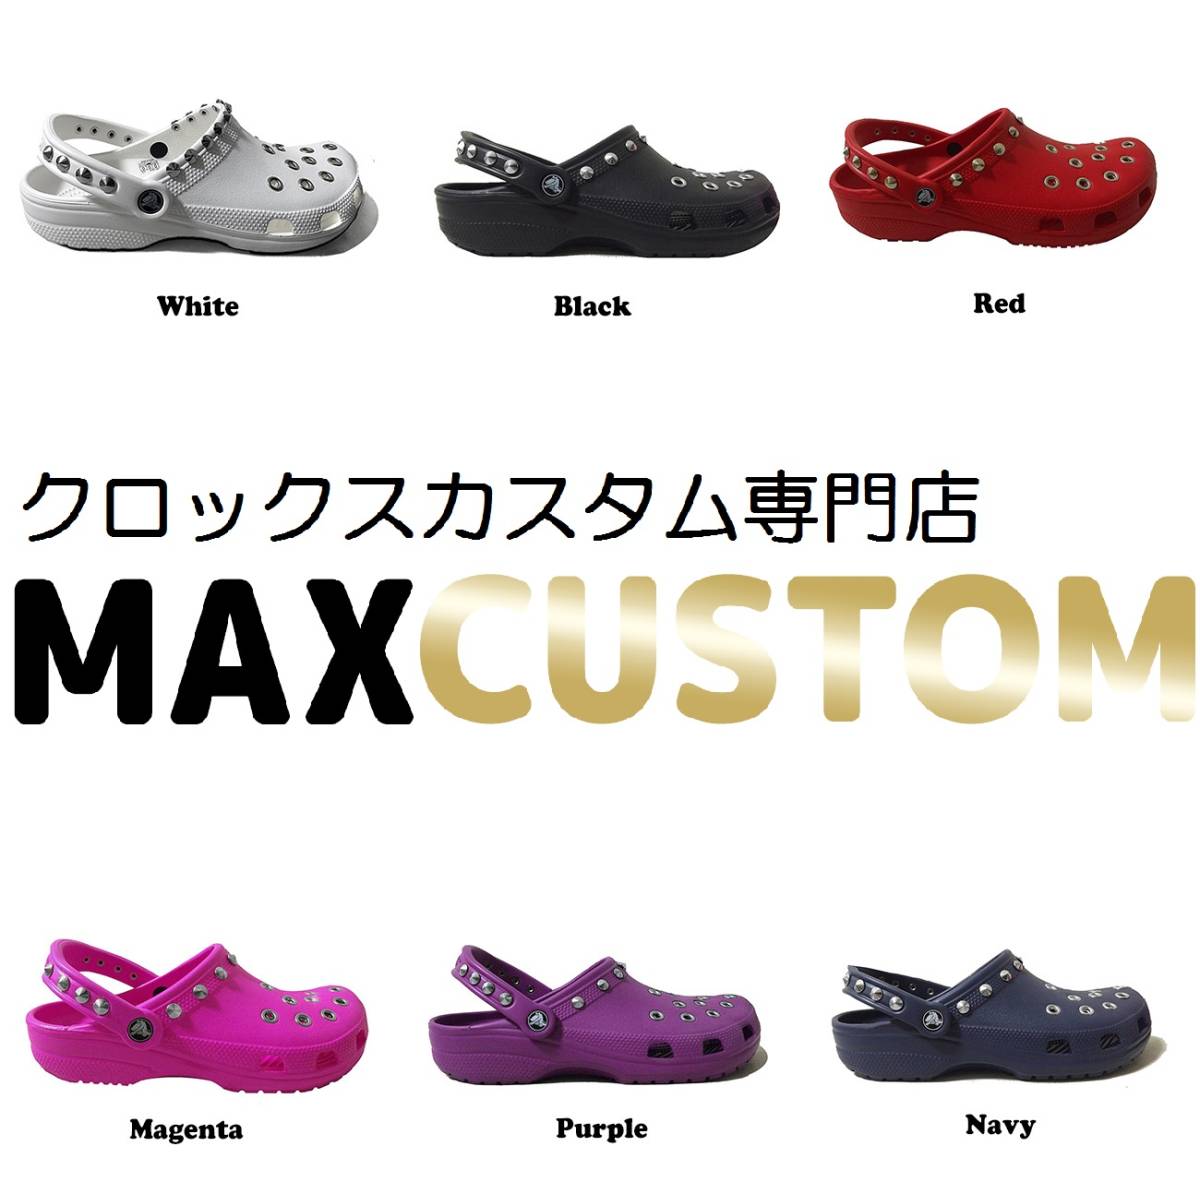 クロックス crocs パンク カスタム ピンク サイズ　22-27cm 新品 classic ケイマン MAXCUSTOM ジビッツ 自作_その他カスタム多数あります